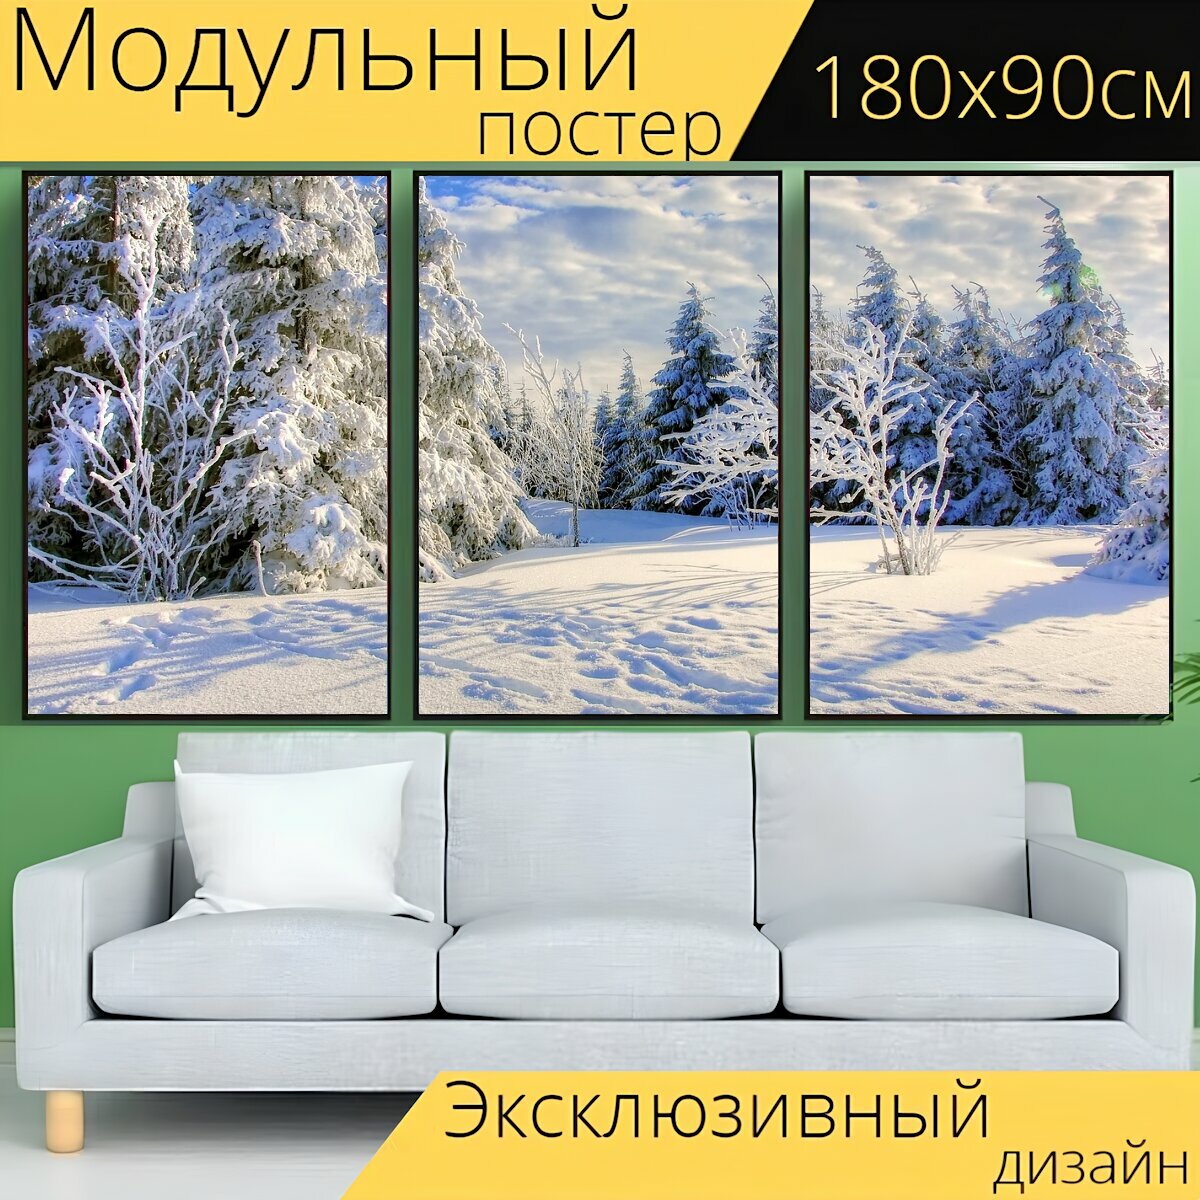 Модульный постер "Снег, мороз, зима" 180 x 90 см. для интерьера